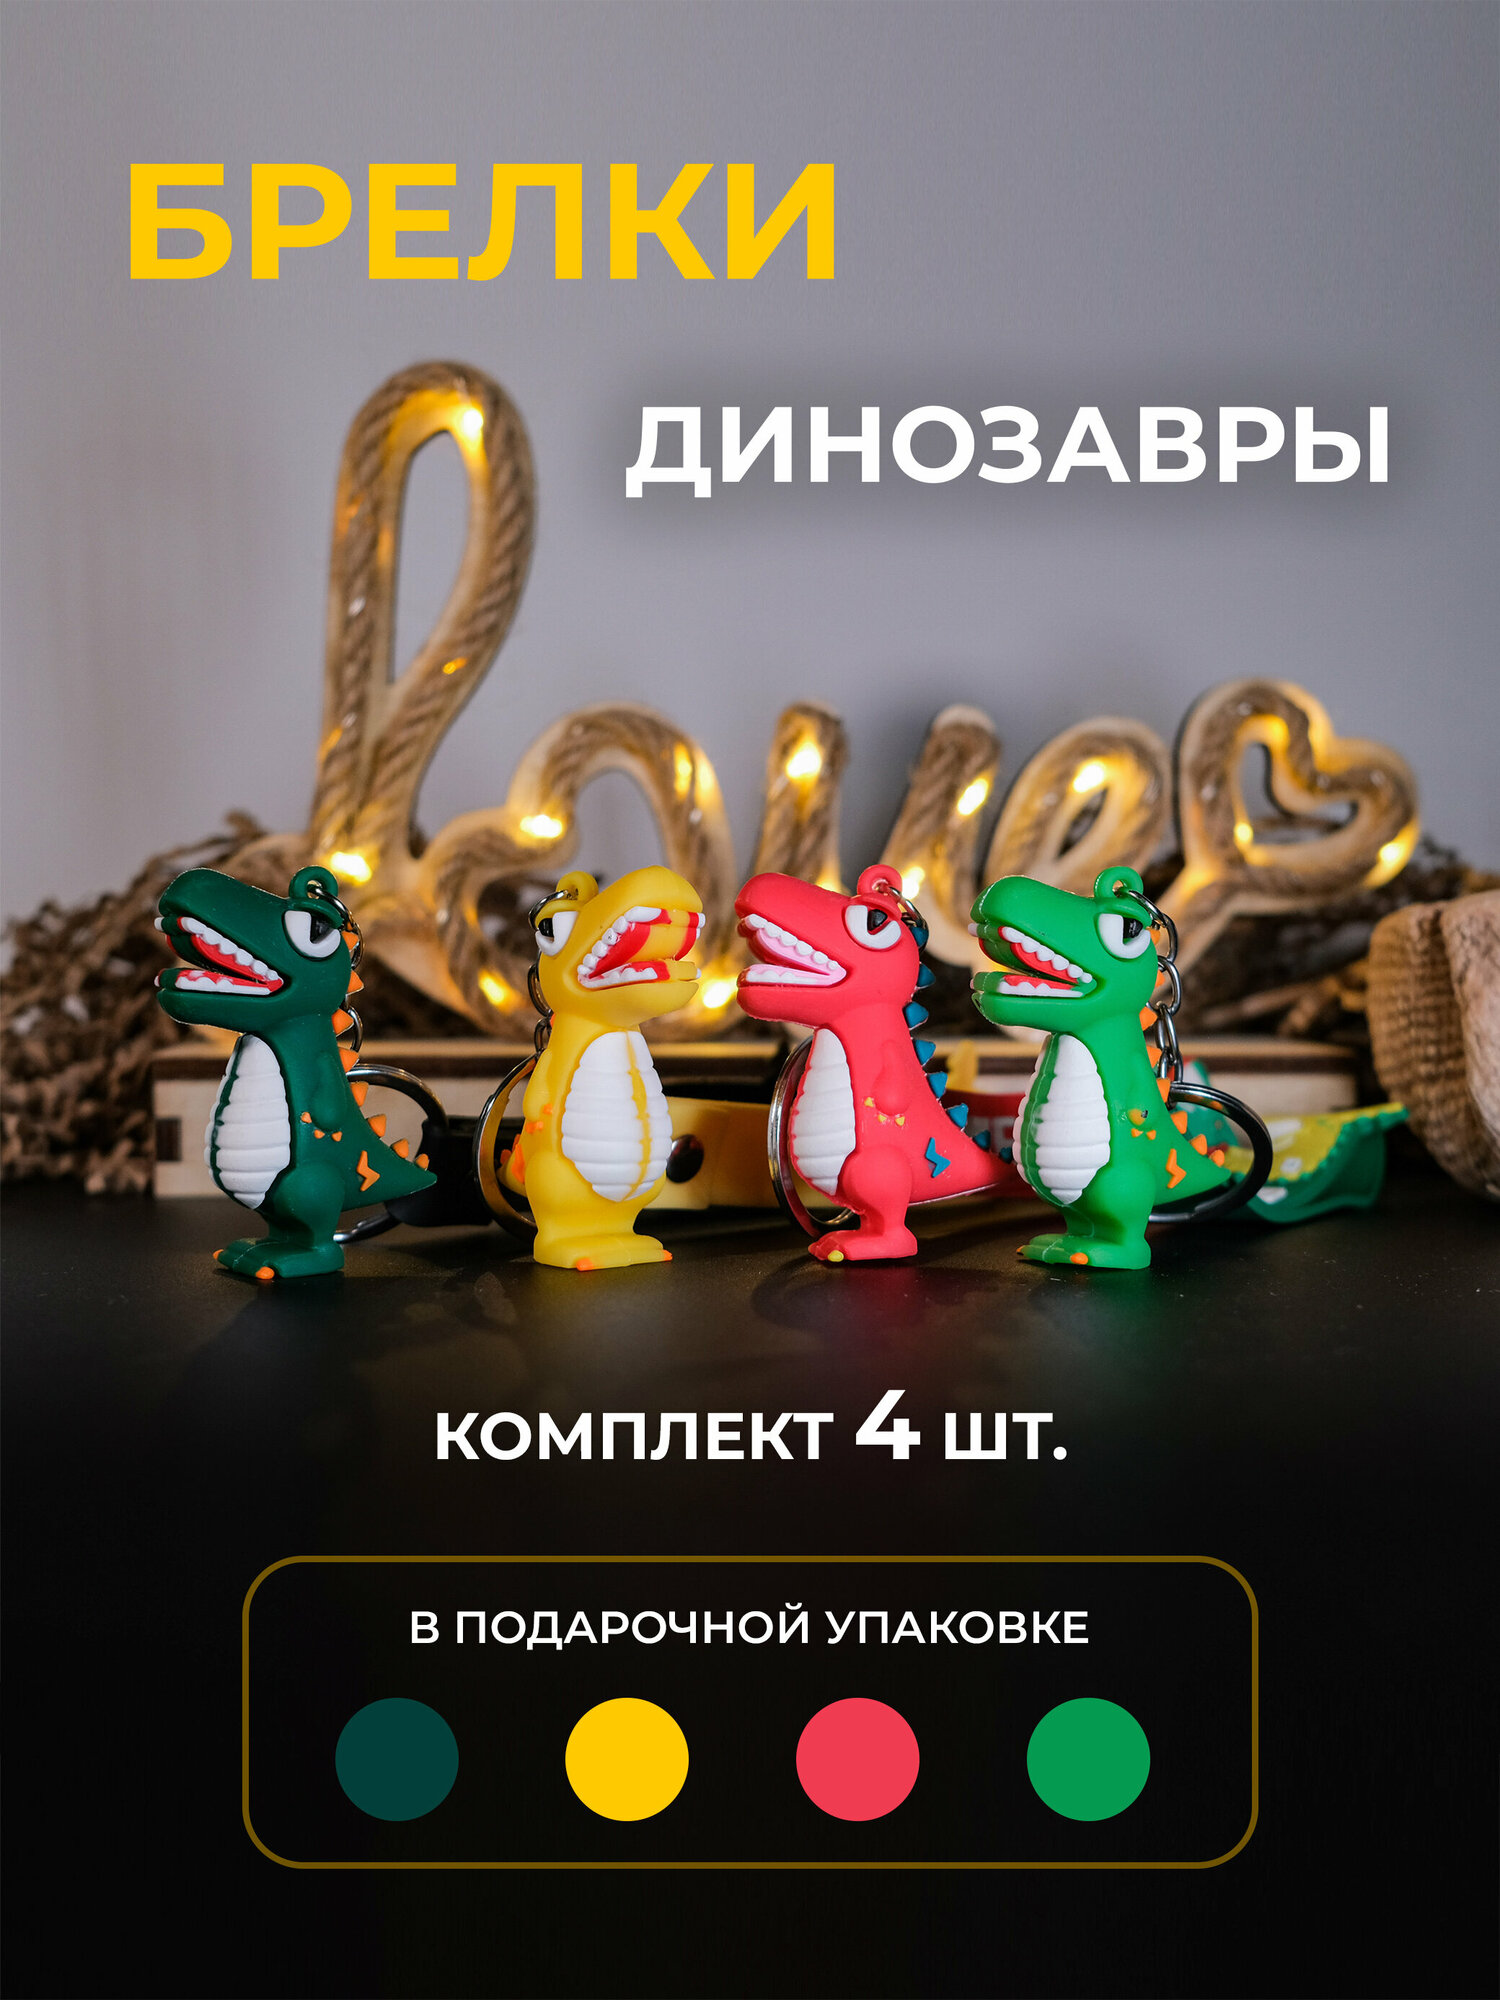 Брелок Брелок новогодние Драконы "dragon" в подарочной упаковке Для ключей / Для Рюкзака - комплект из 4 штук